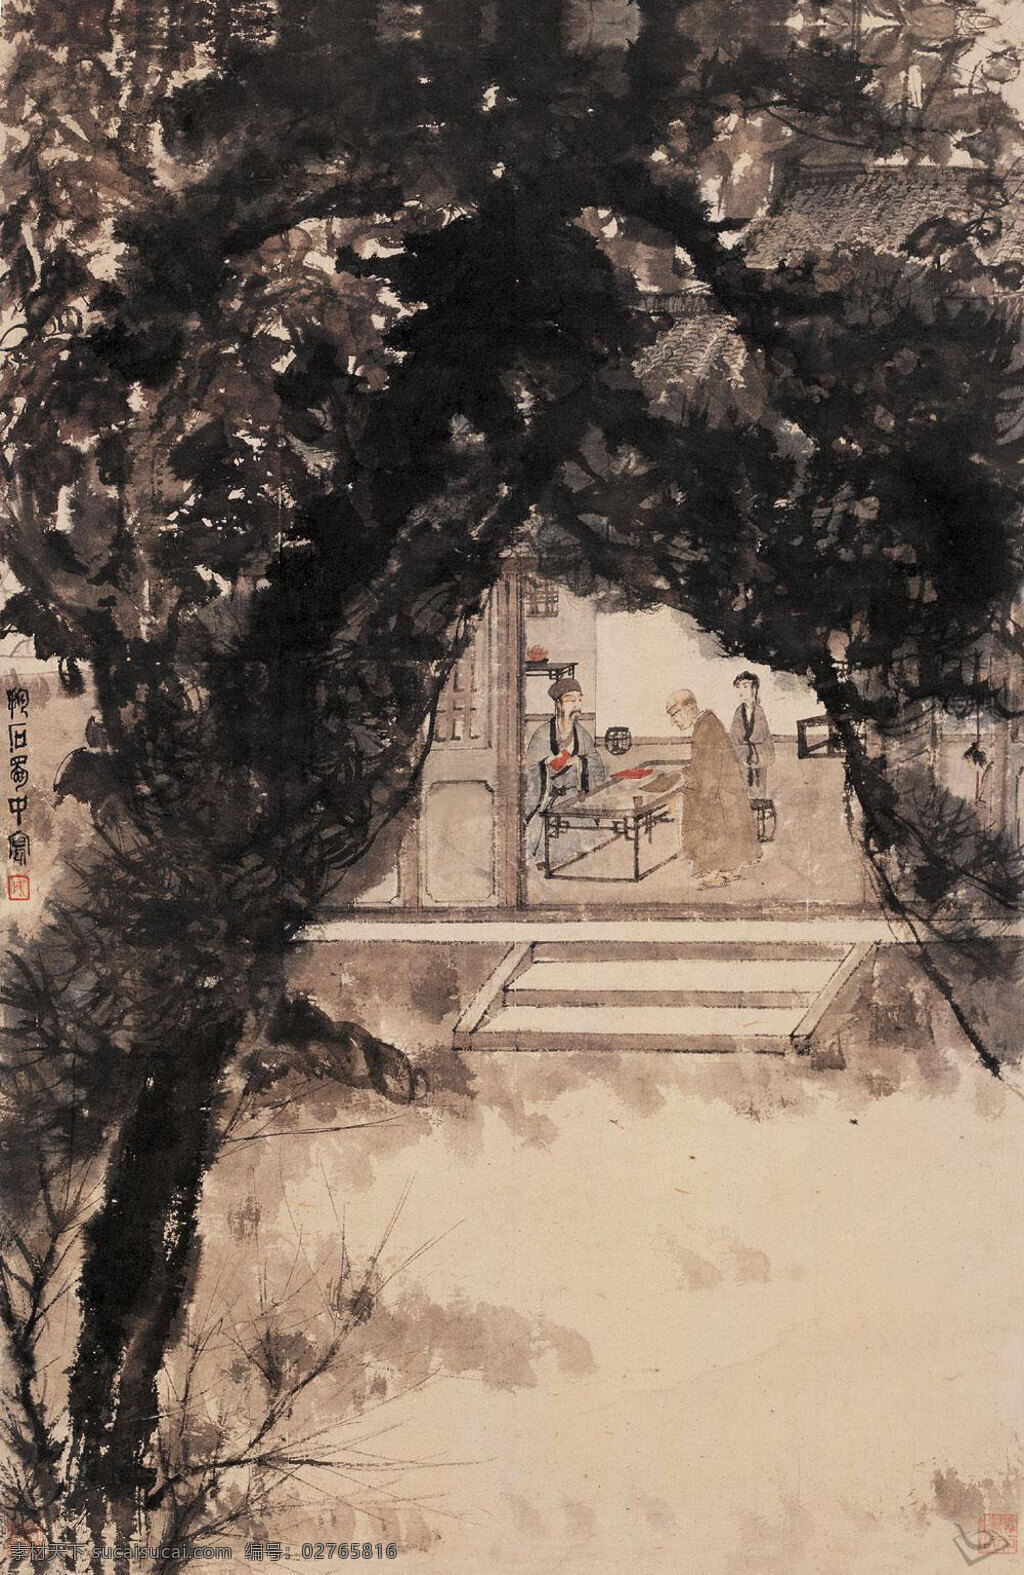 布施图 傅抱石 国画 施主 和尚 仆人 厅堂 台阶 大树 庭院 绘画书法 文化艺术